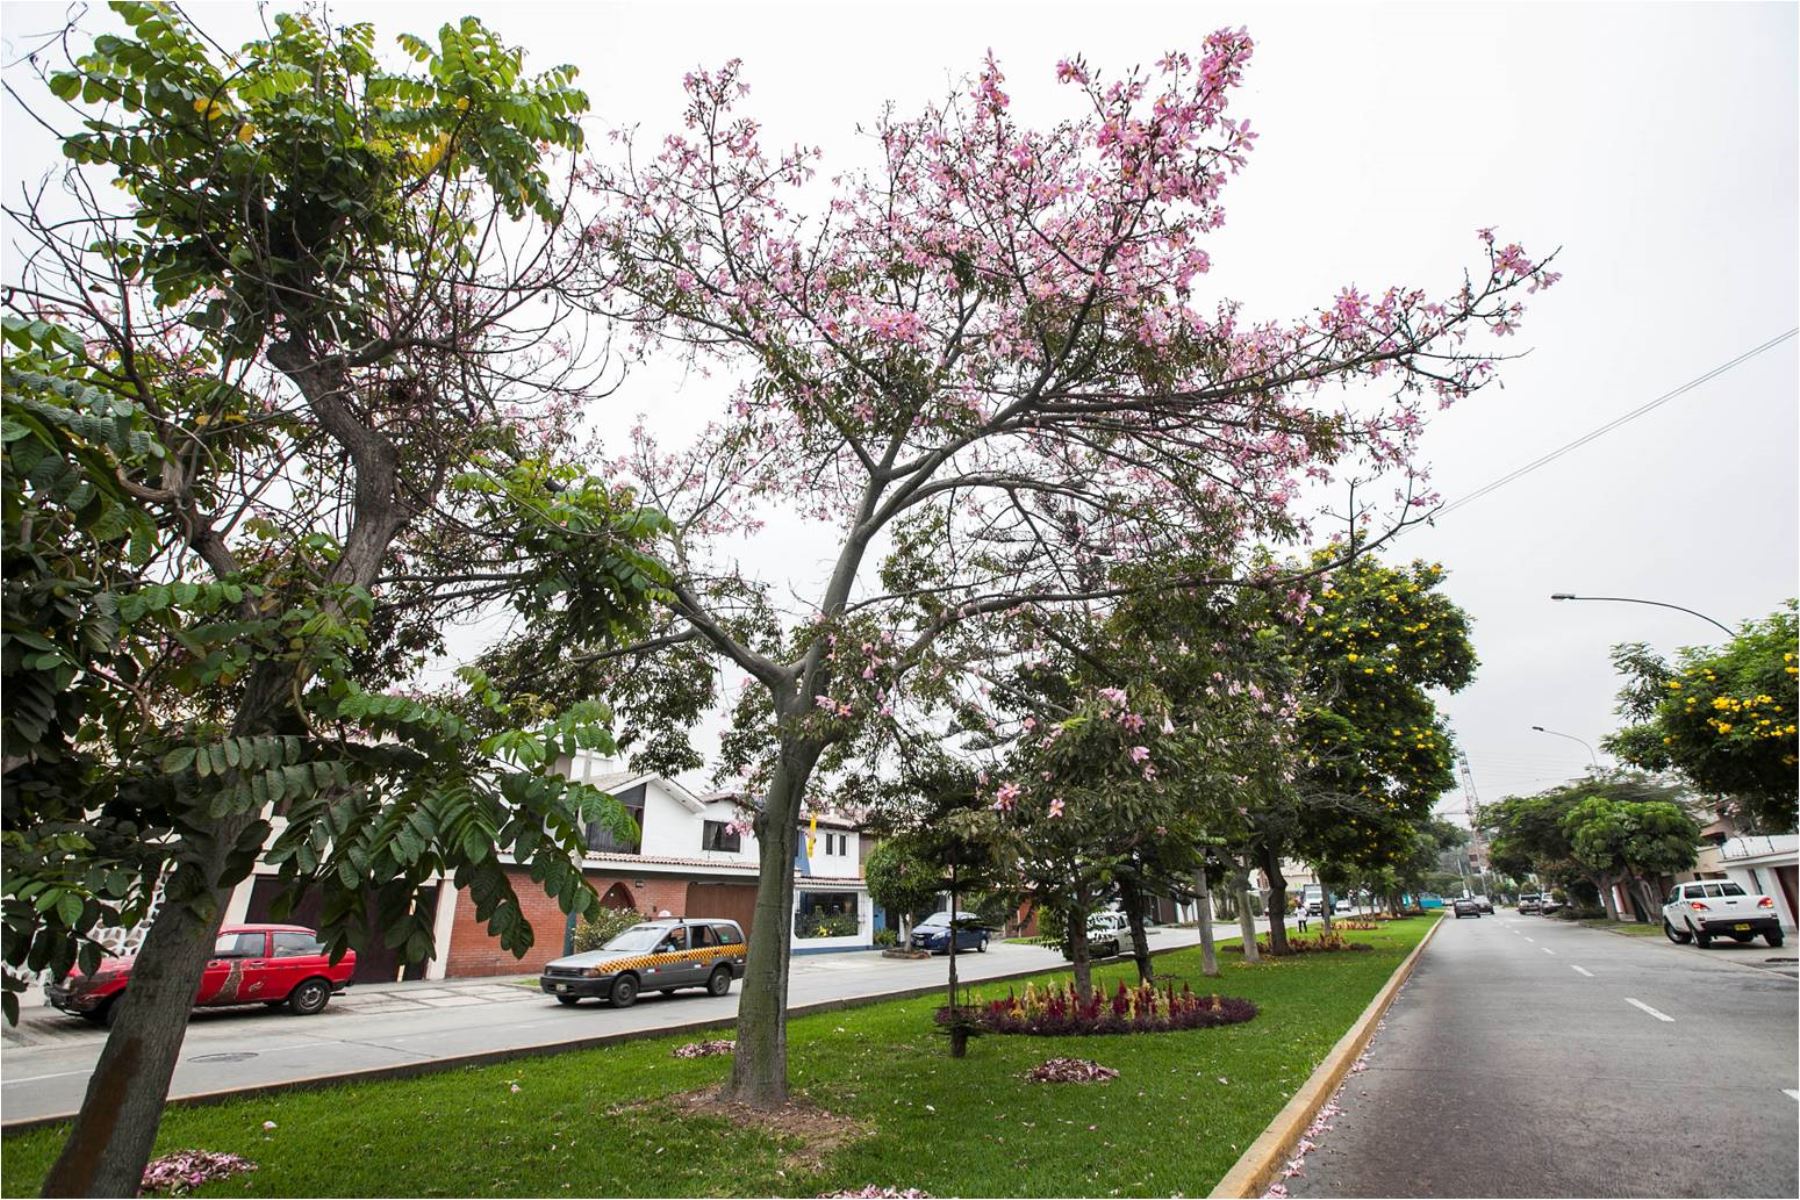 El Minam recomienda mantener áreas verdes en cada barrio o distrito, como una alternativa eficaz, y a largo plazo, frente a los cambios extremos del clima.ANDINA/Difusión